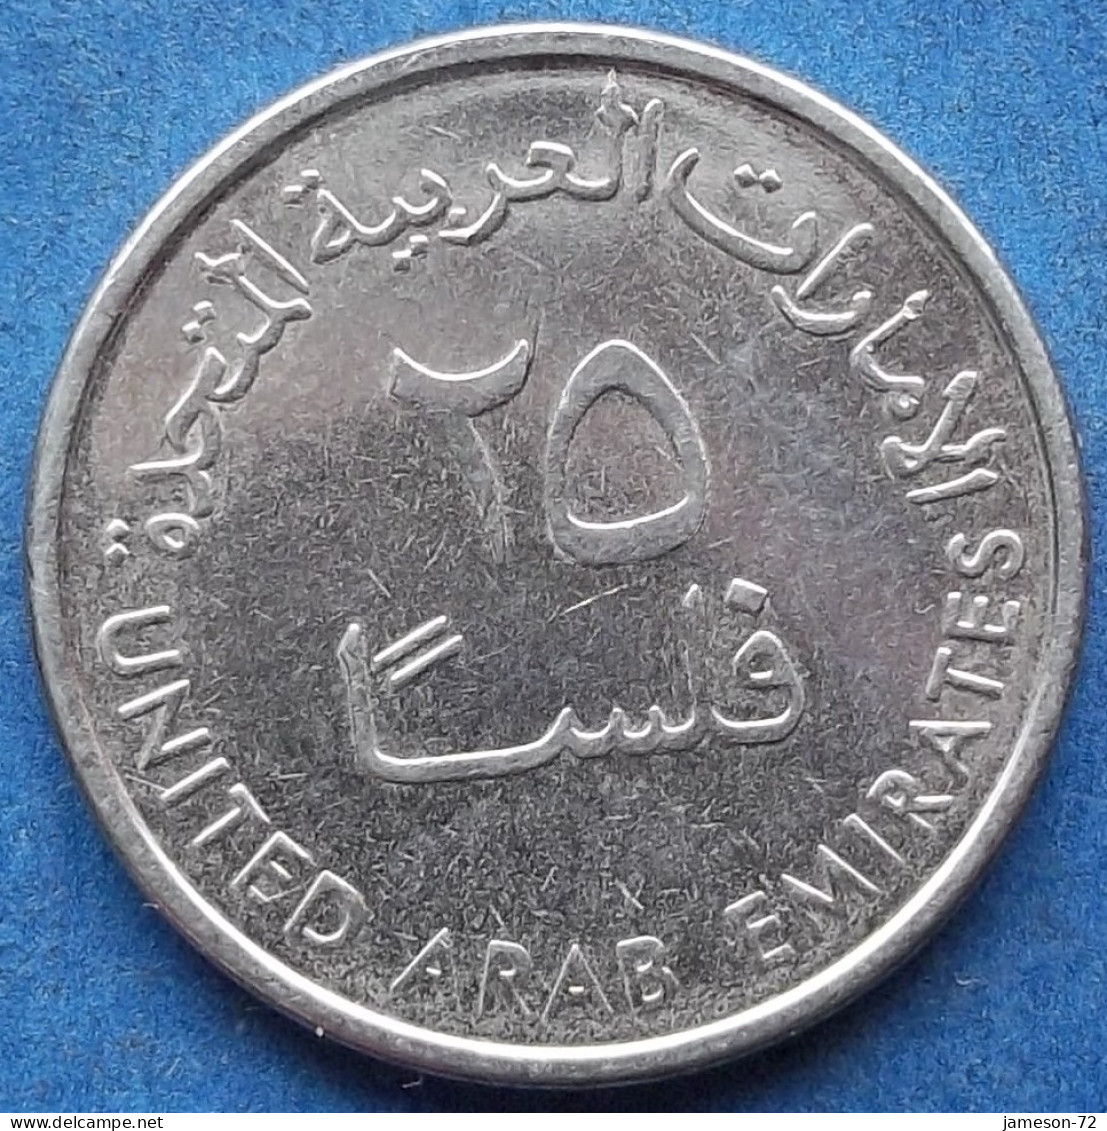 UNITED ARAB EMIRATES - 25 Fils AH1443 / 2022AD "Gazelle" KM# 4a Independent (1971) - Edelweiss Coins - Verenigde Arabische Emiraten